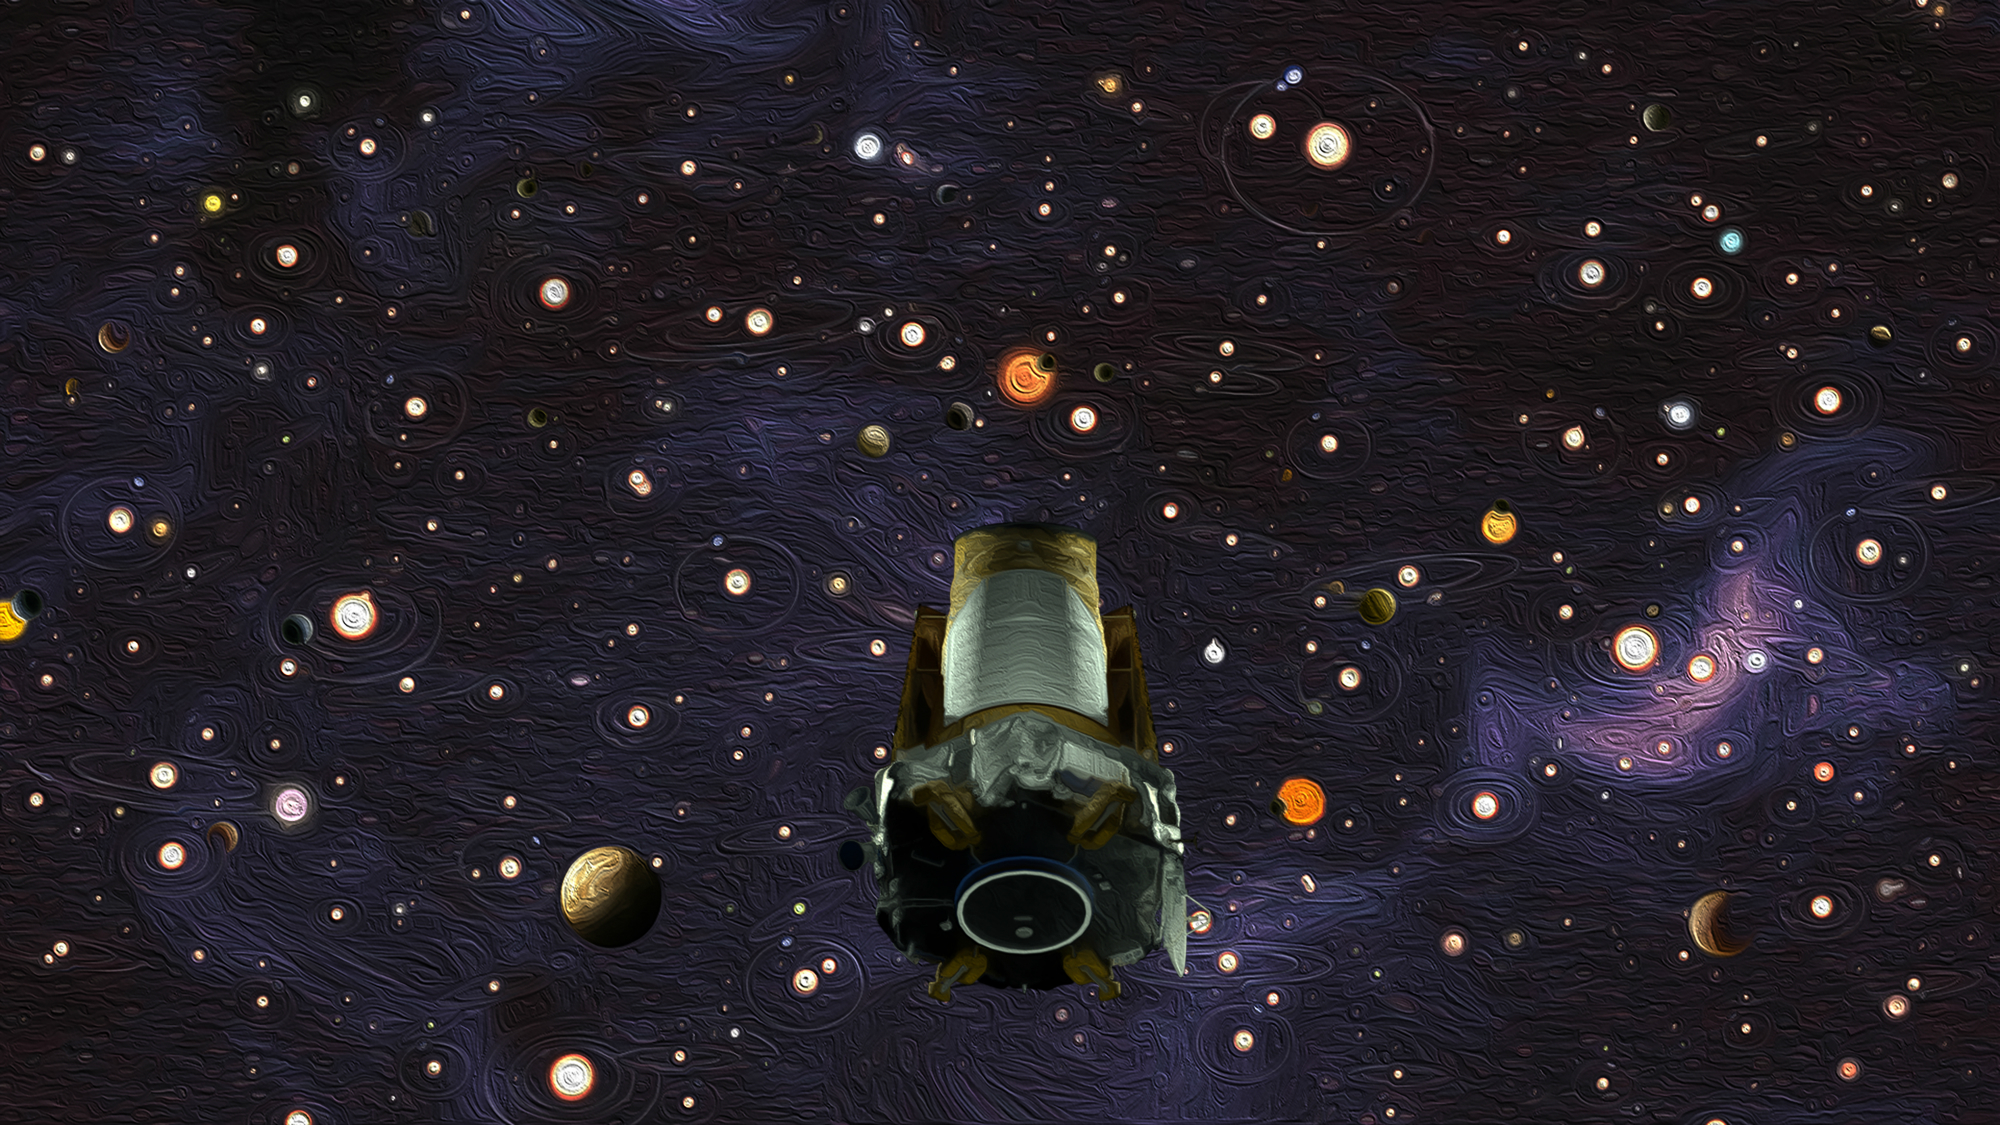 NASA’s Kepler space telescope